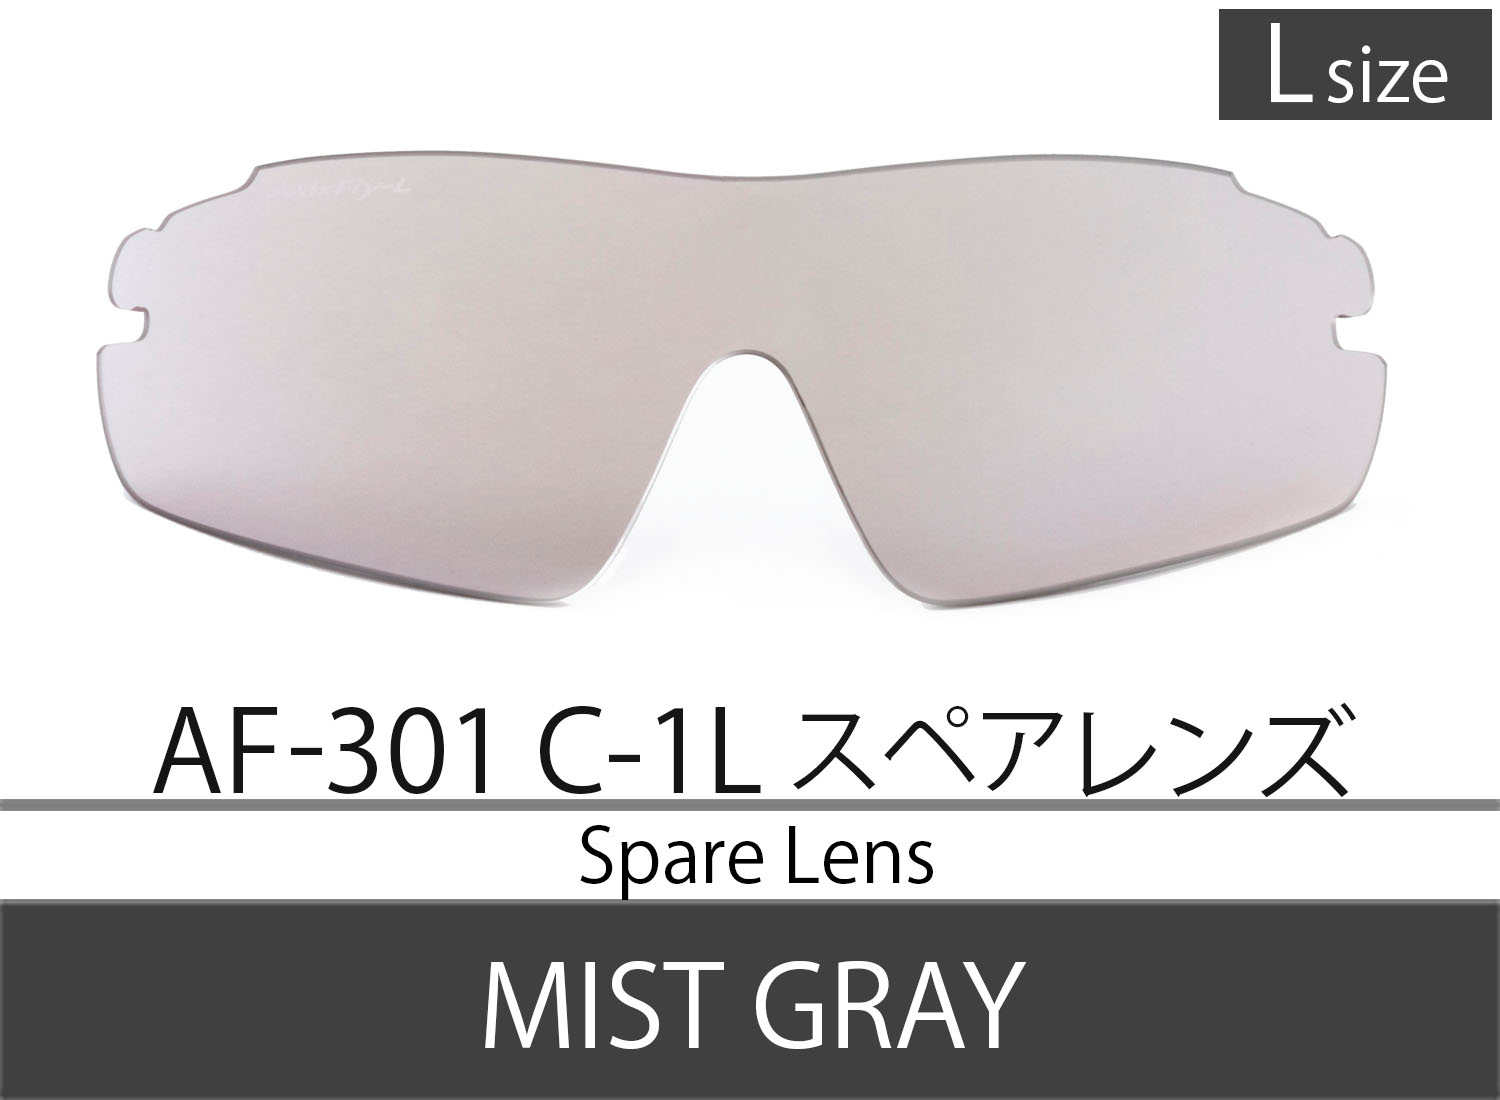 Spare LensAF-301 C-1 Mist Gray Lsize